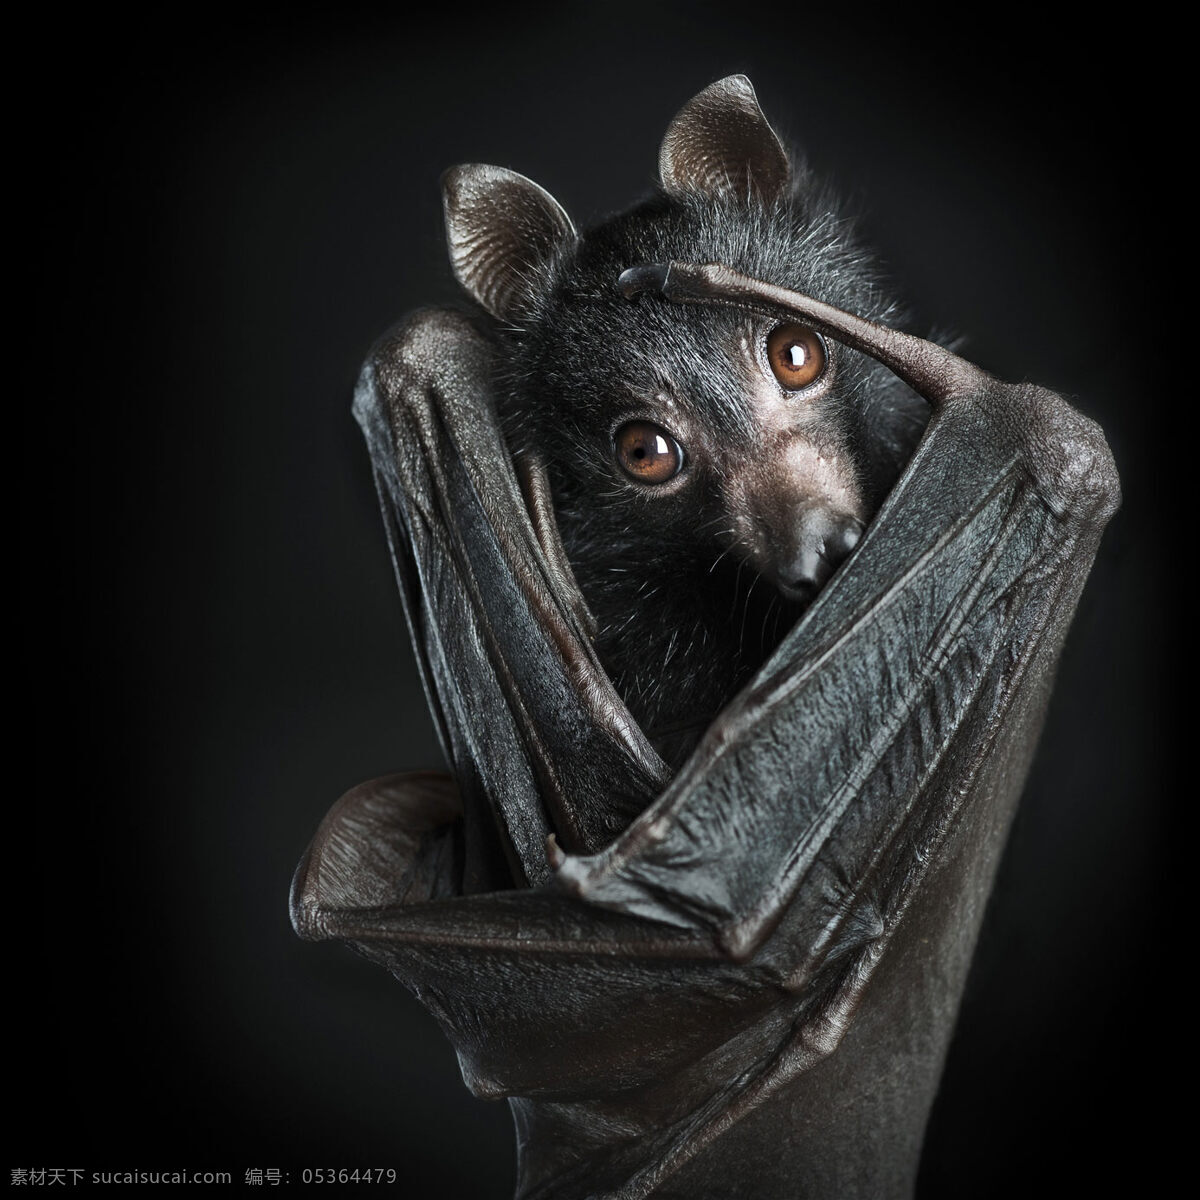 唯美 炫酷 生物 动物 野生 蝙蝠 凶猛蝙蝠 生物世界 野生动物